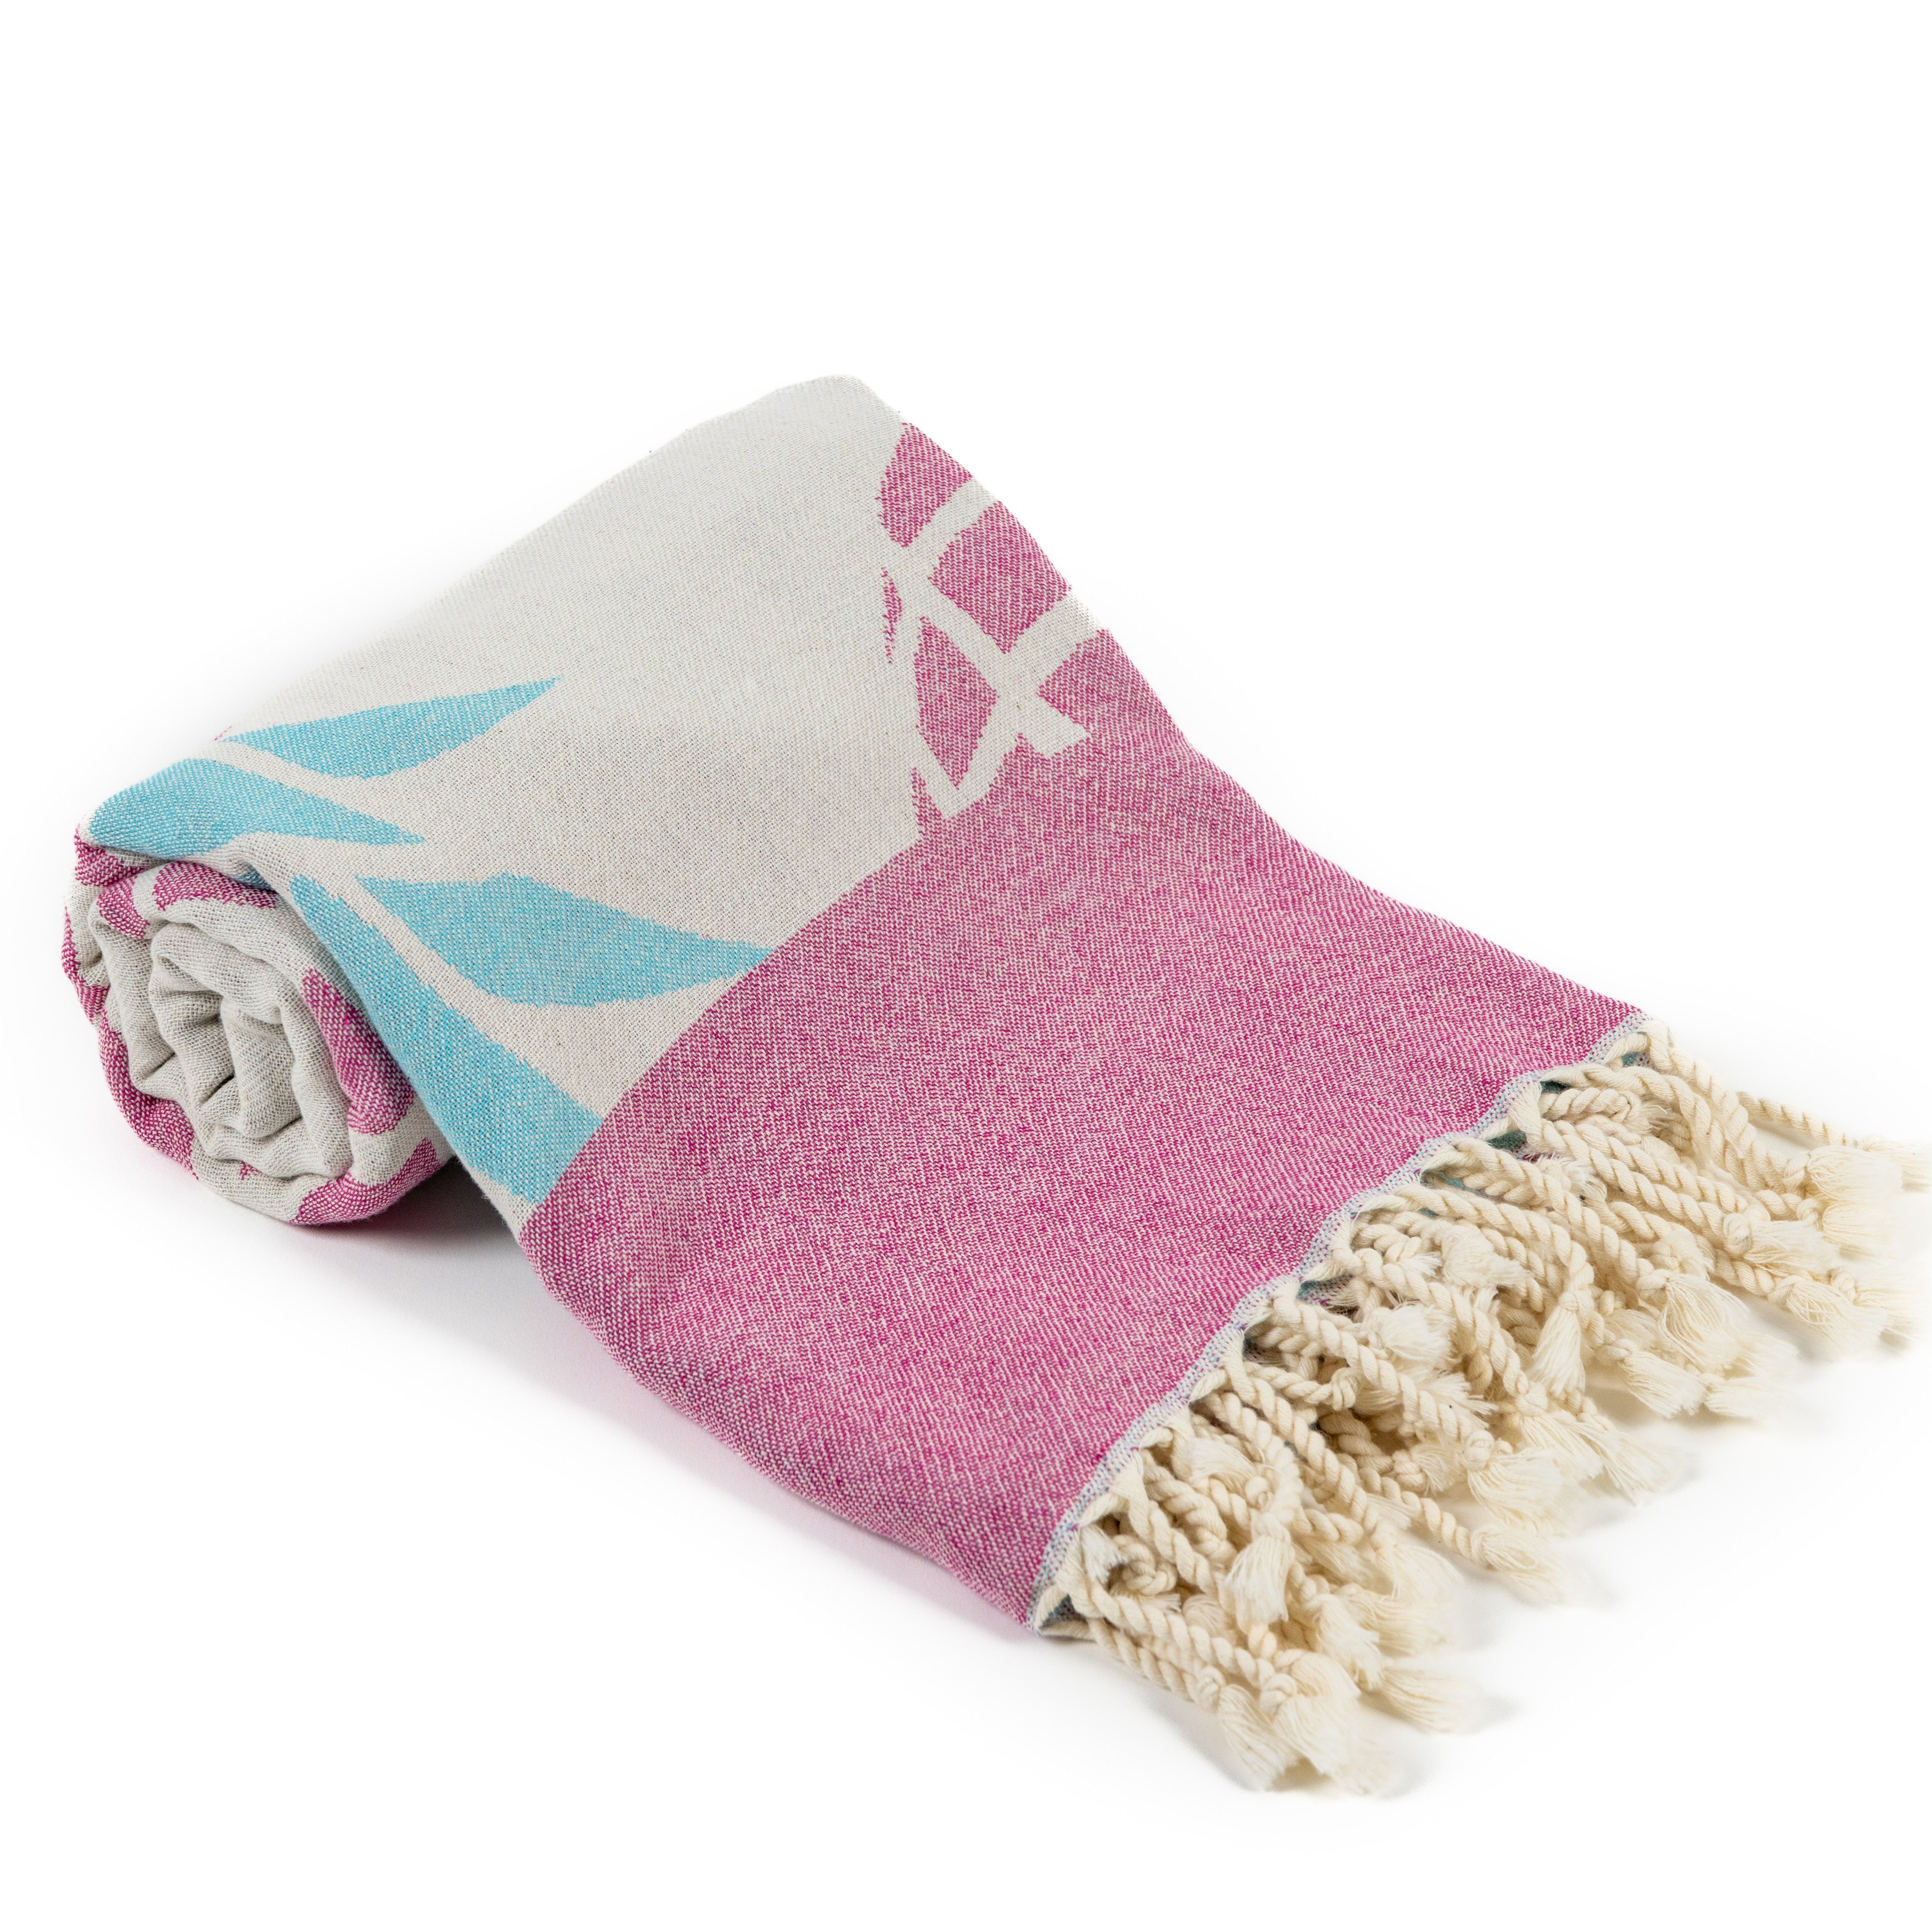 BEARFOOT Handtuch Strandtuch Handtuch Badetuch Hamamtuch, Pineapple Saunatuch Pink 180x90cm, Baumwolle